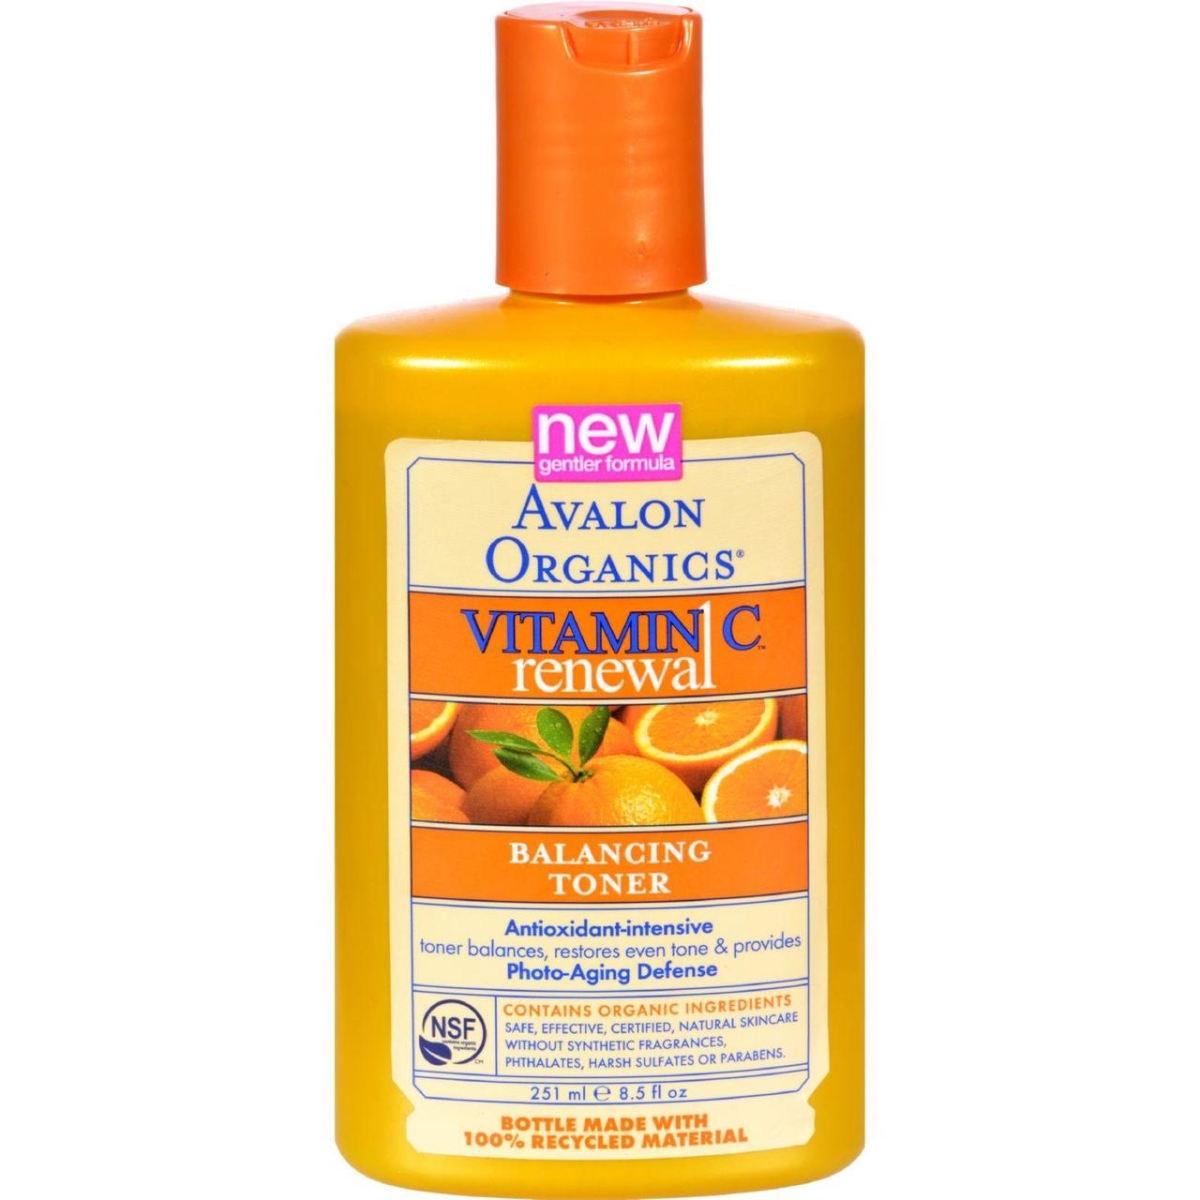 Hg0200931 8.5 Fl Oz Organics Balancing Toner Vitamin C Renewal